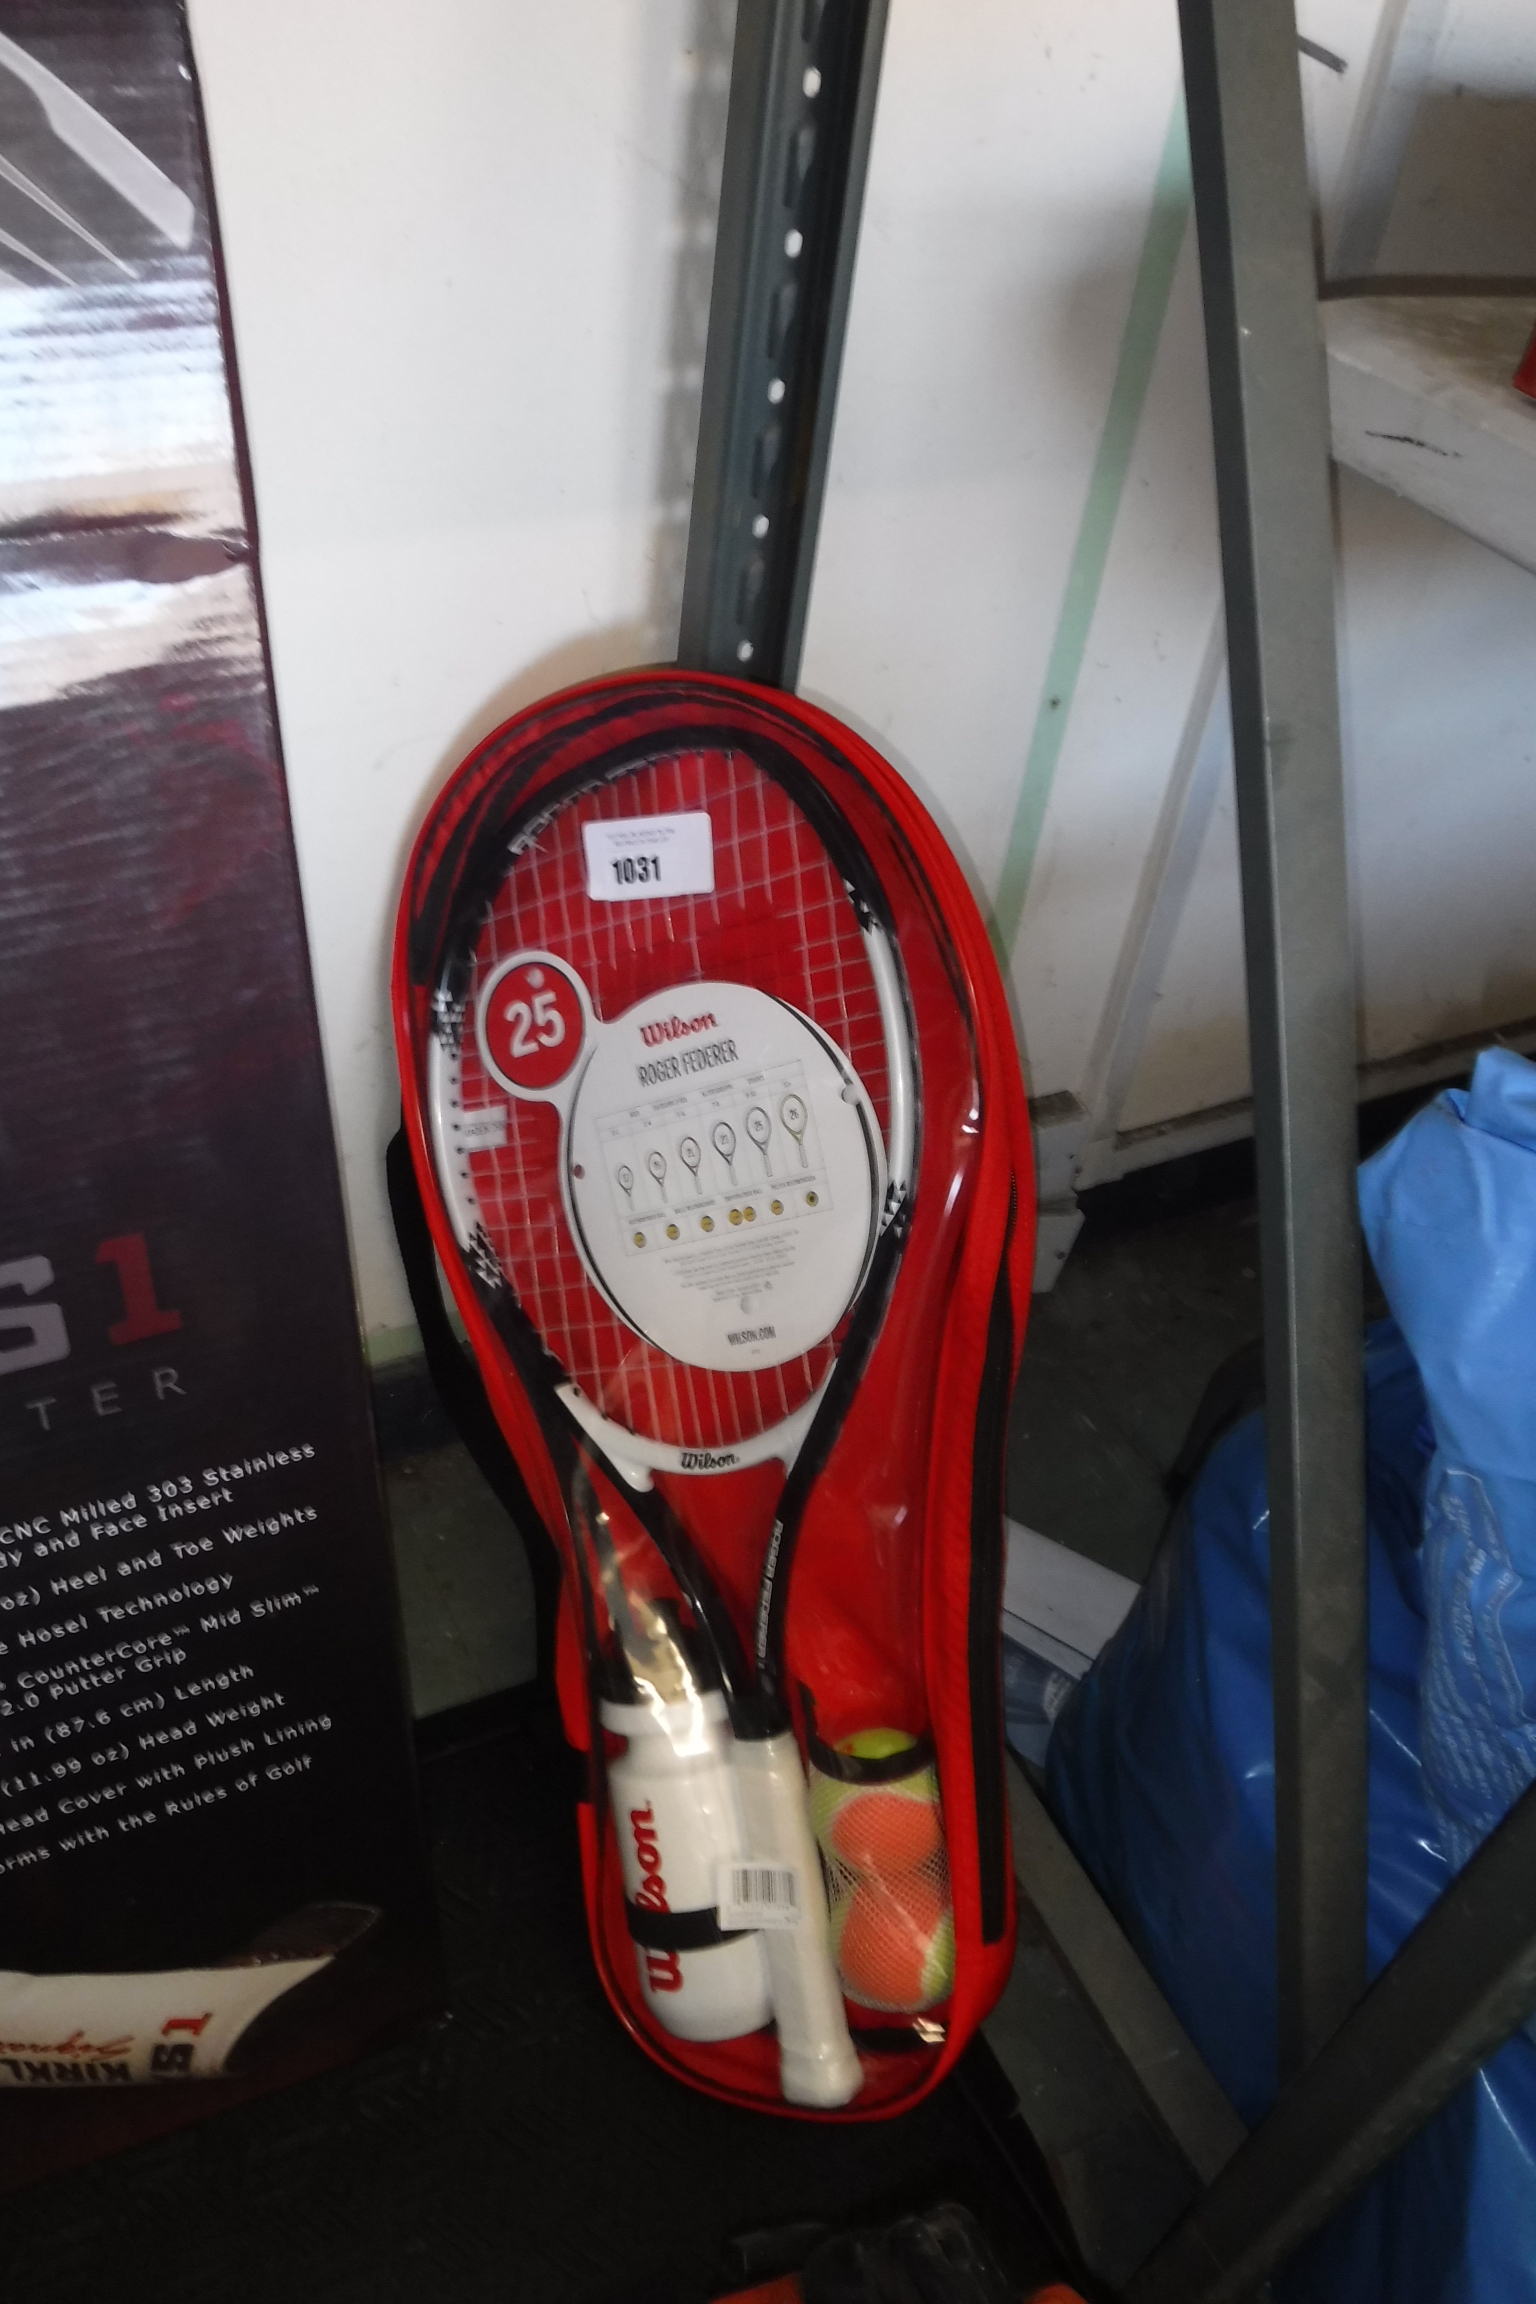 Wilson Roger Federer tennis racket set comprising tennis racket, 2 tennis balls and Wilson branded